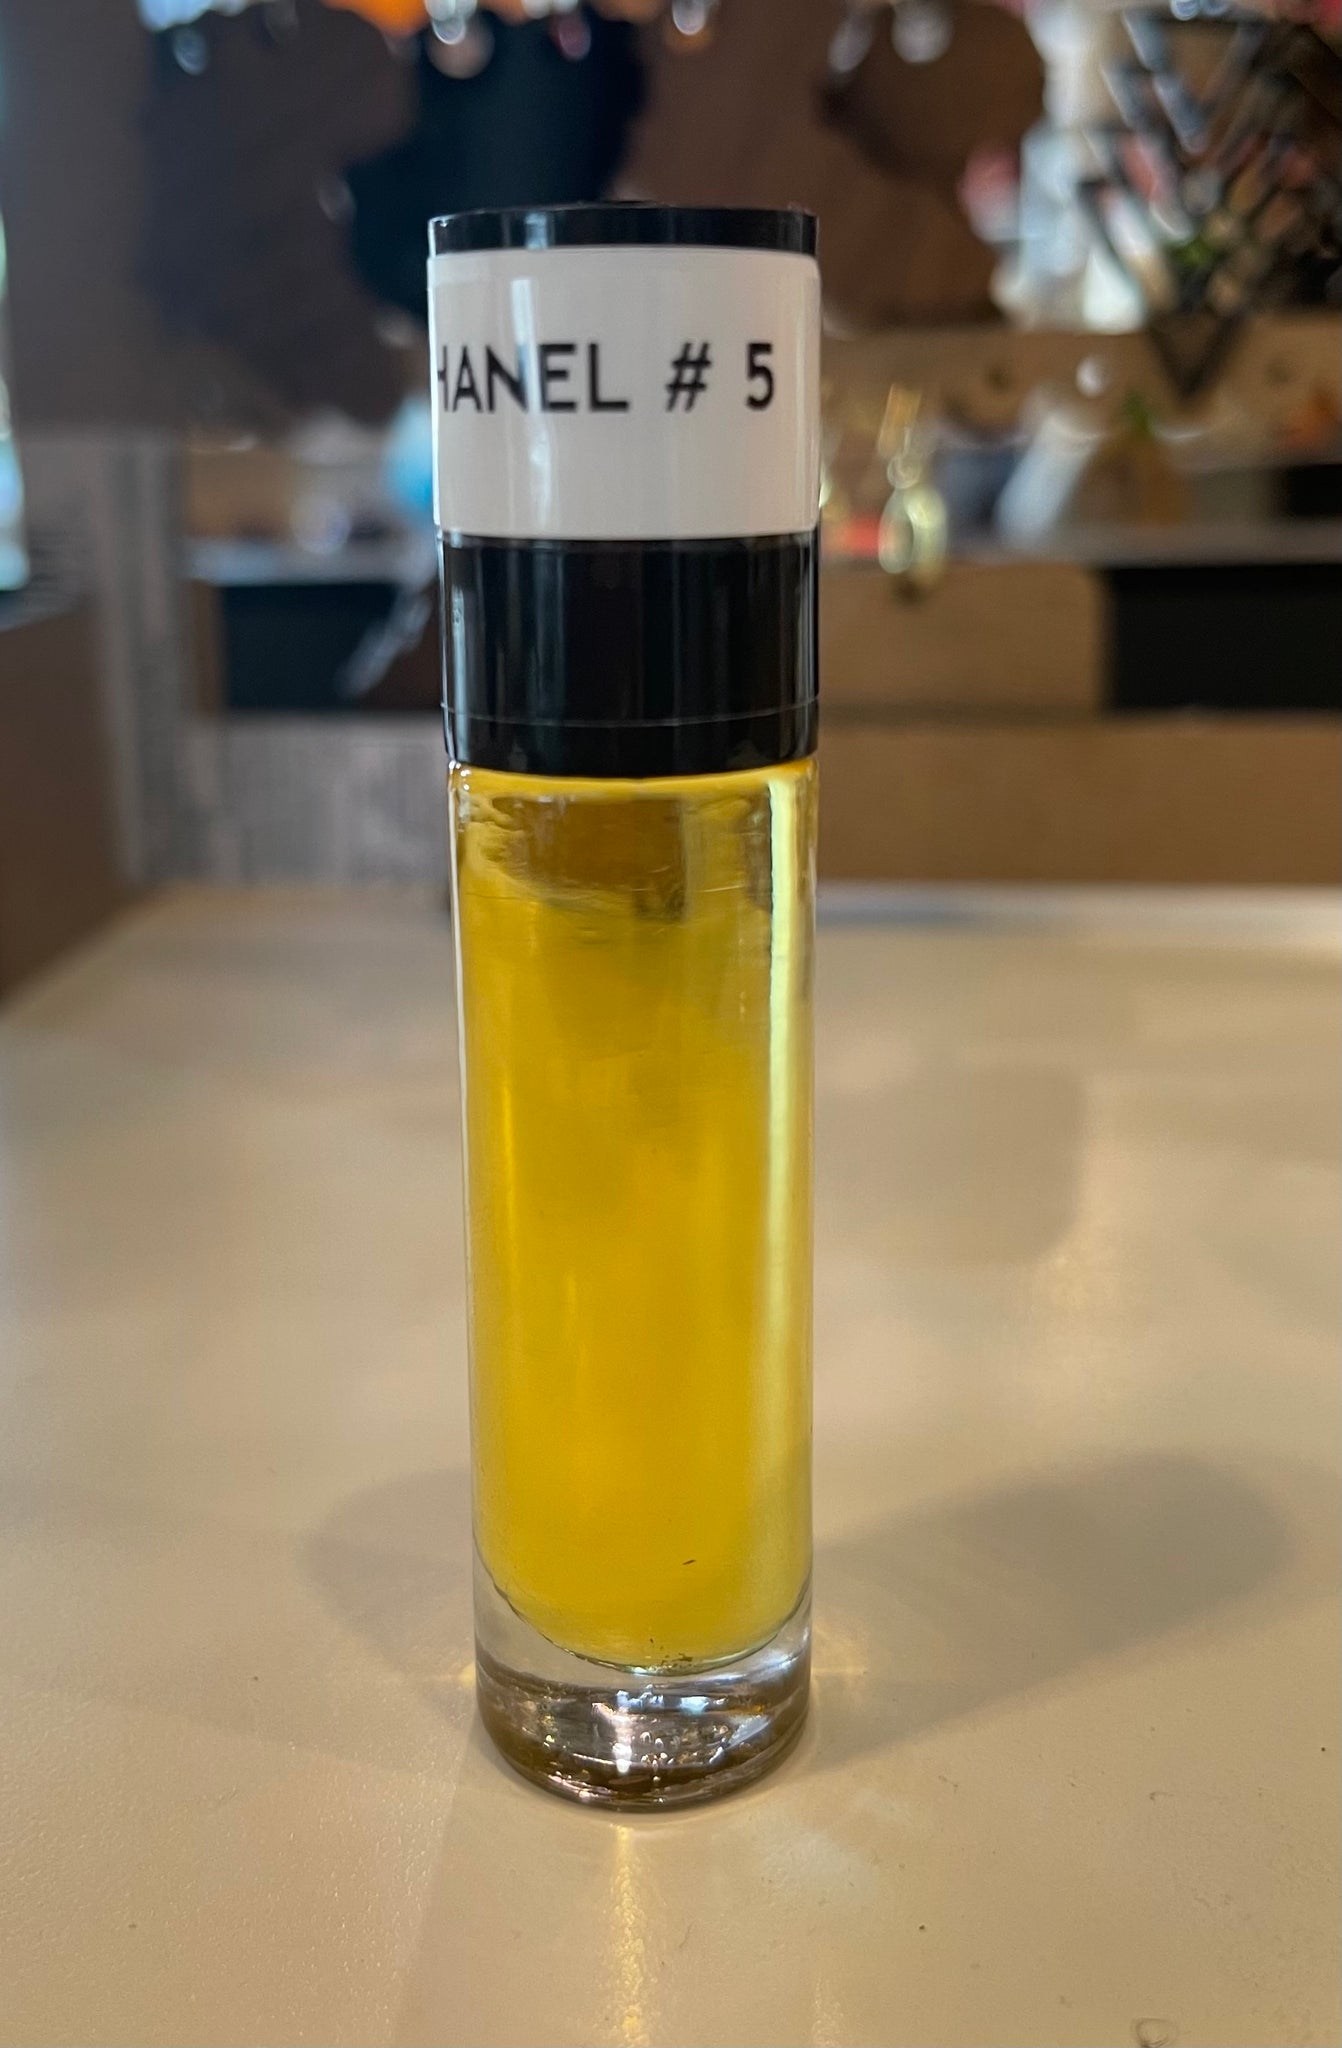 chanel body oil no 5